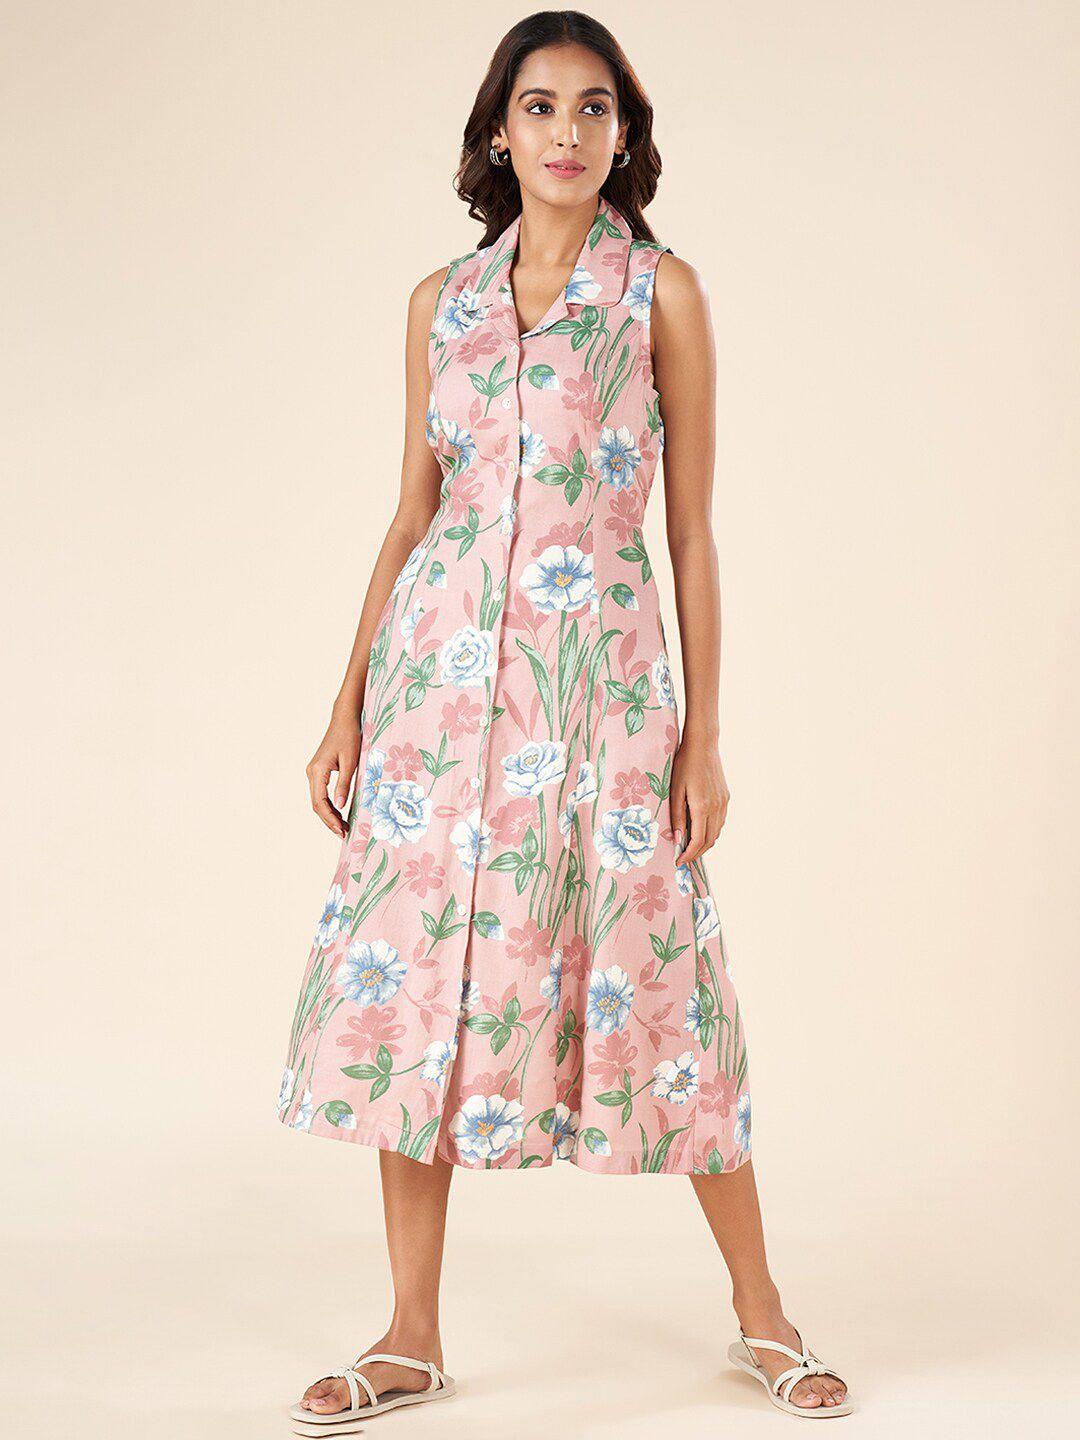 AKKRITI BY PANTALOONS Floral Printed Shirt Midi Dress